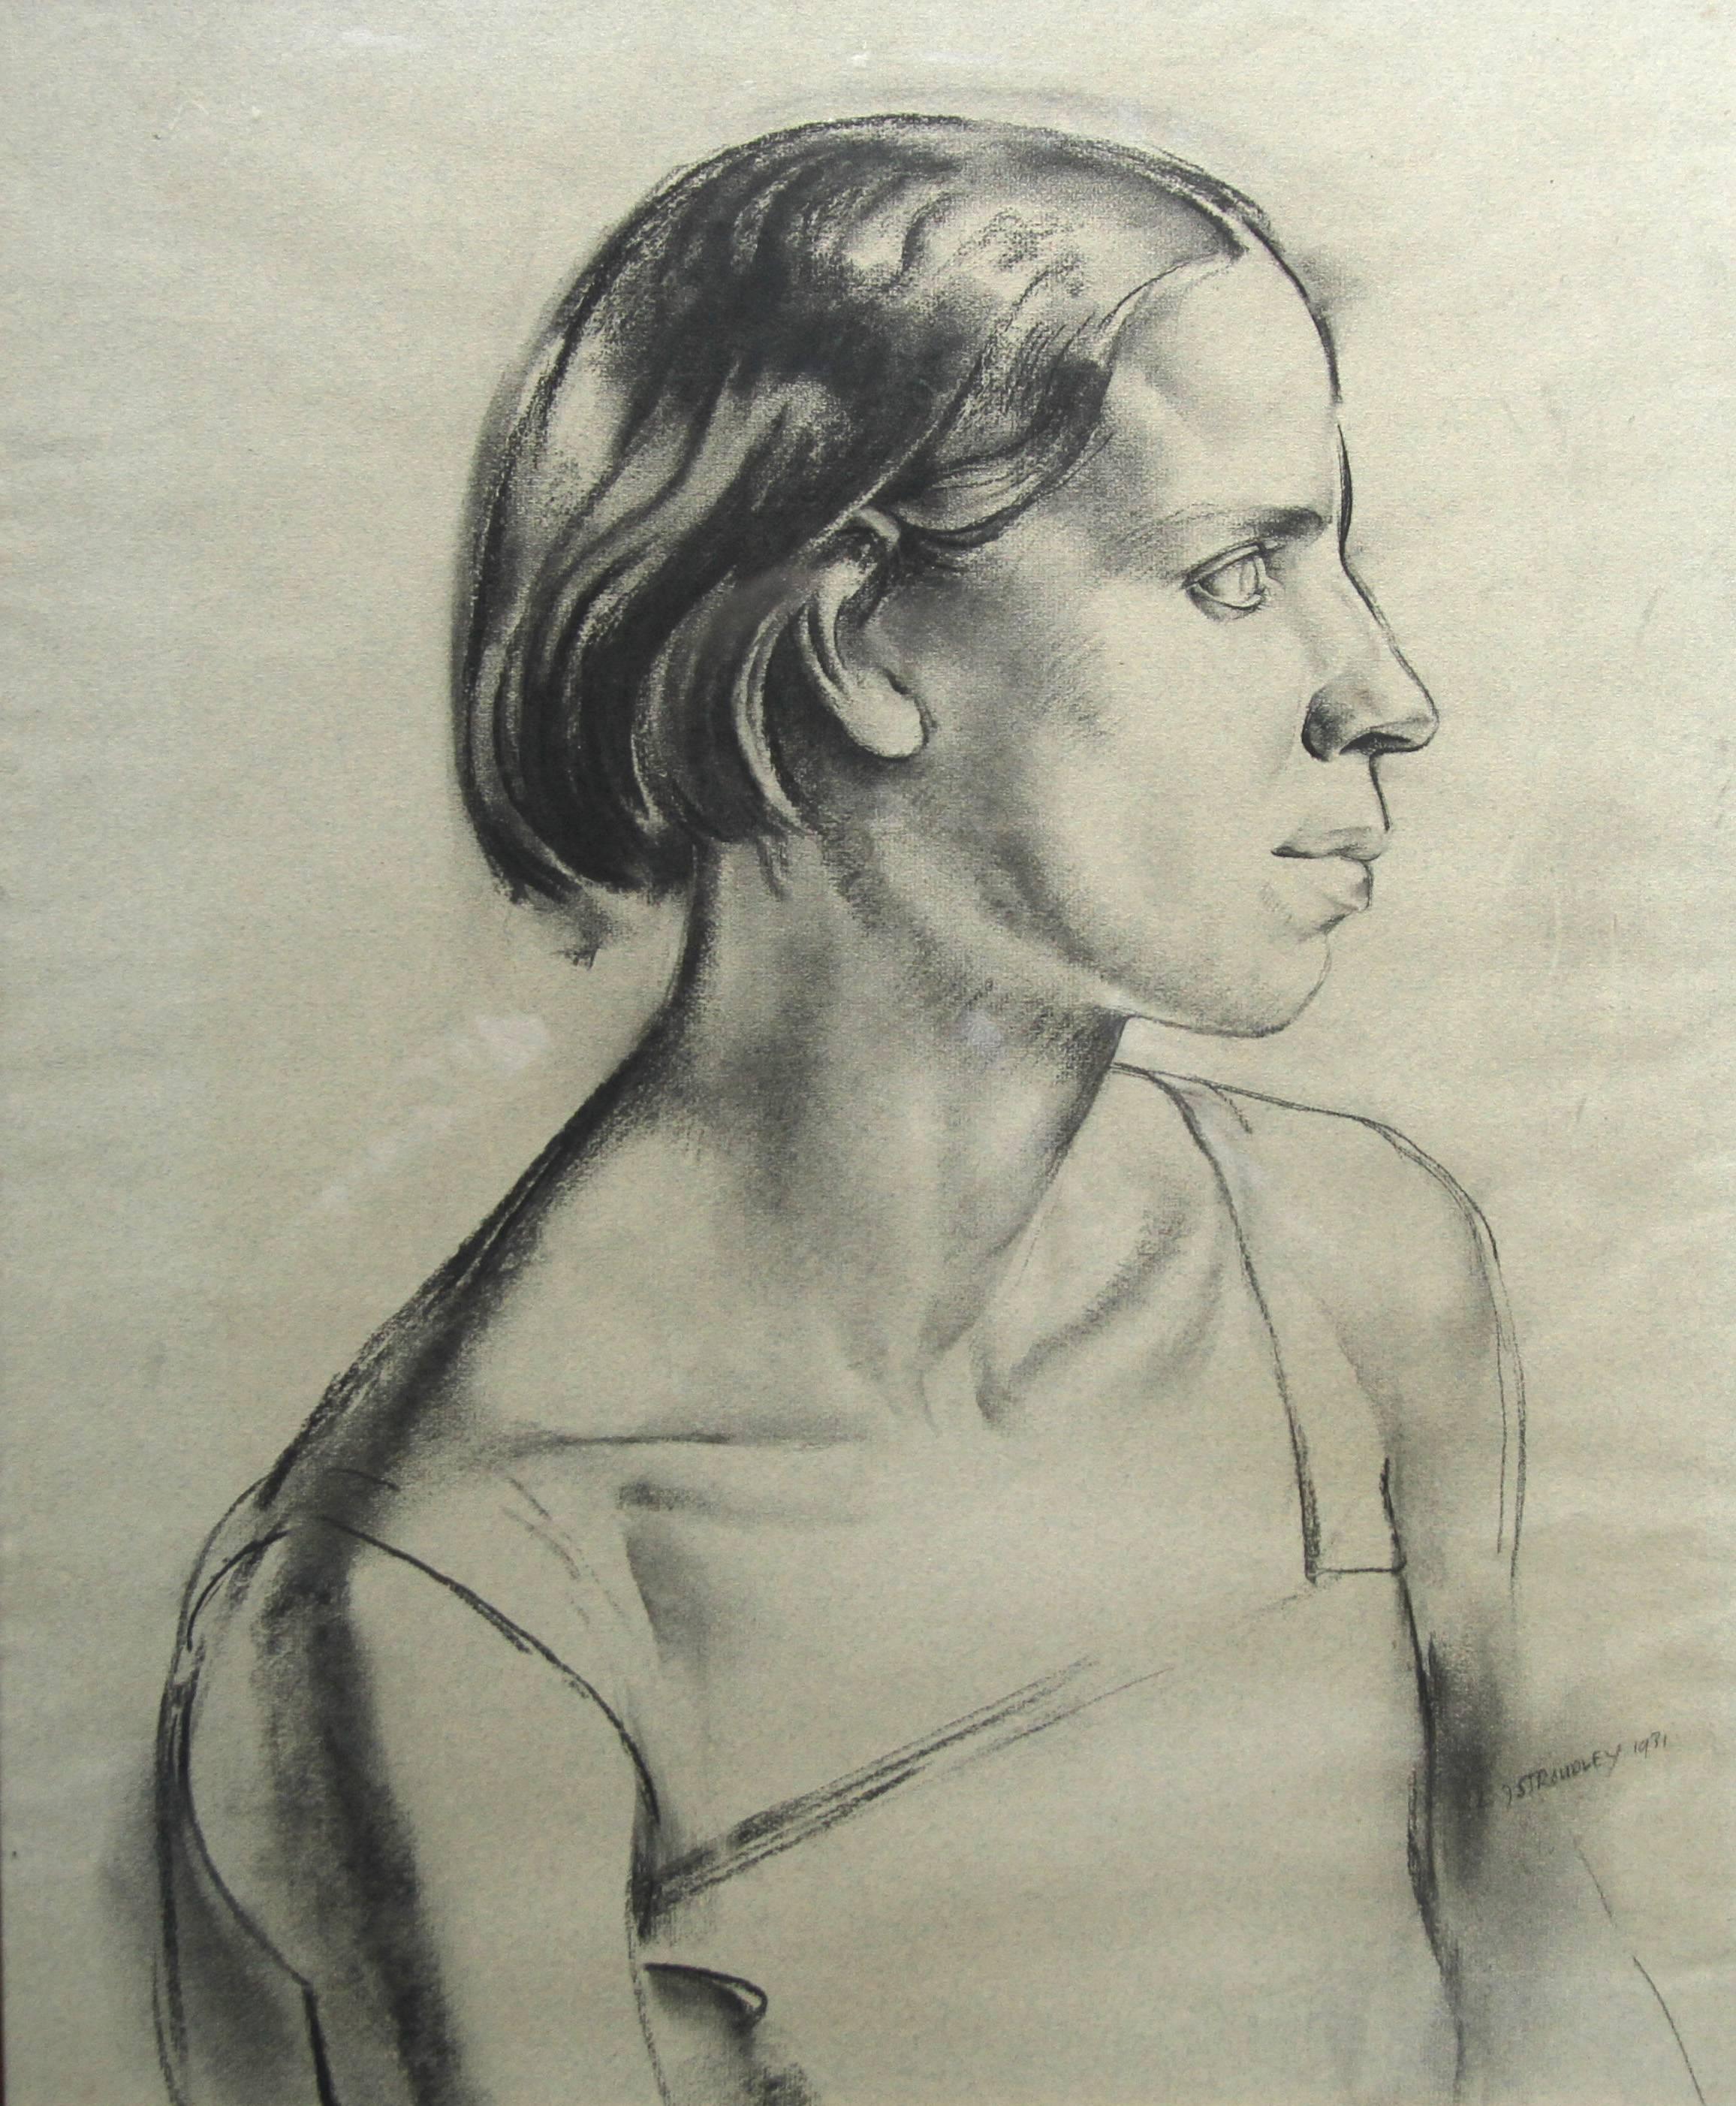 Eine schöne große Kohle- und Bleistiftzeichnung des britischen Künstlers James Stroudley. Es wurde 1931 ausgeführt und ist ein beeindruckendes Beispiel für ein Art-Déco-Porträt der 1930er Jahre. Es ist sehr stark und plakativ und zeigt das Porträt